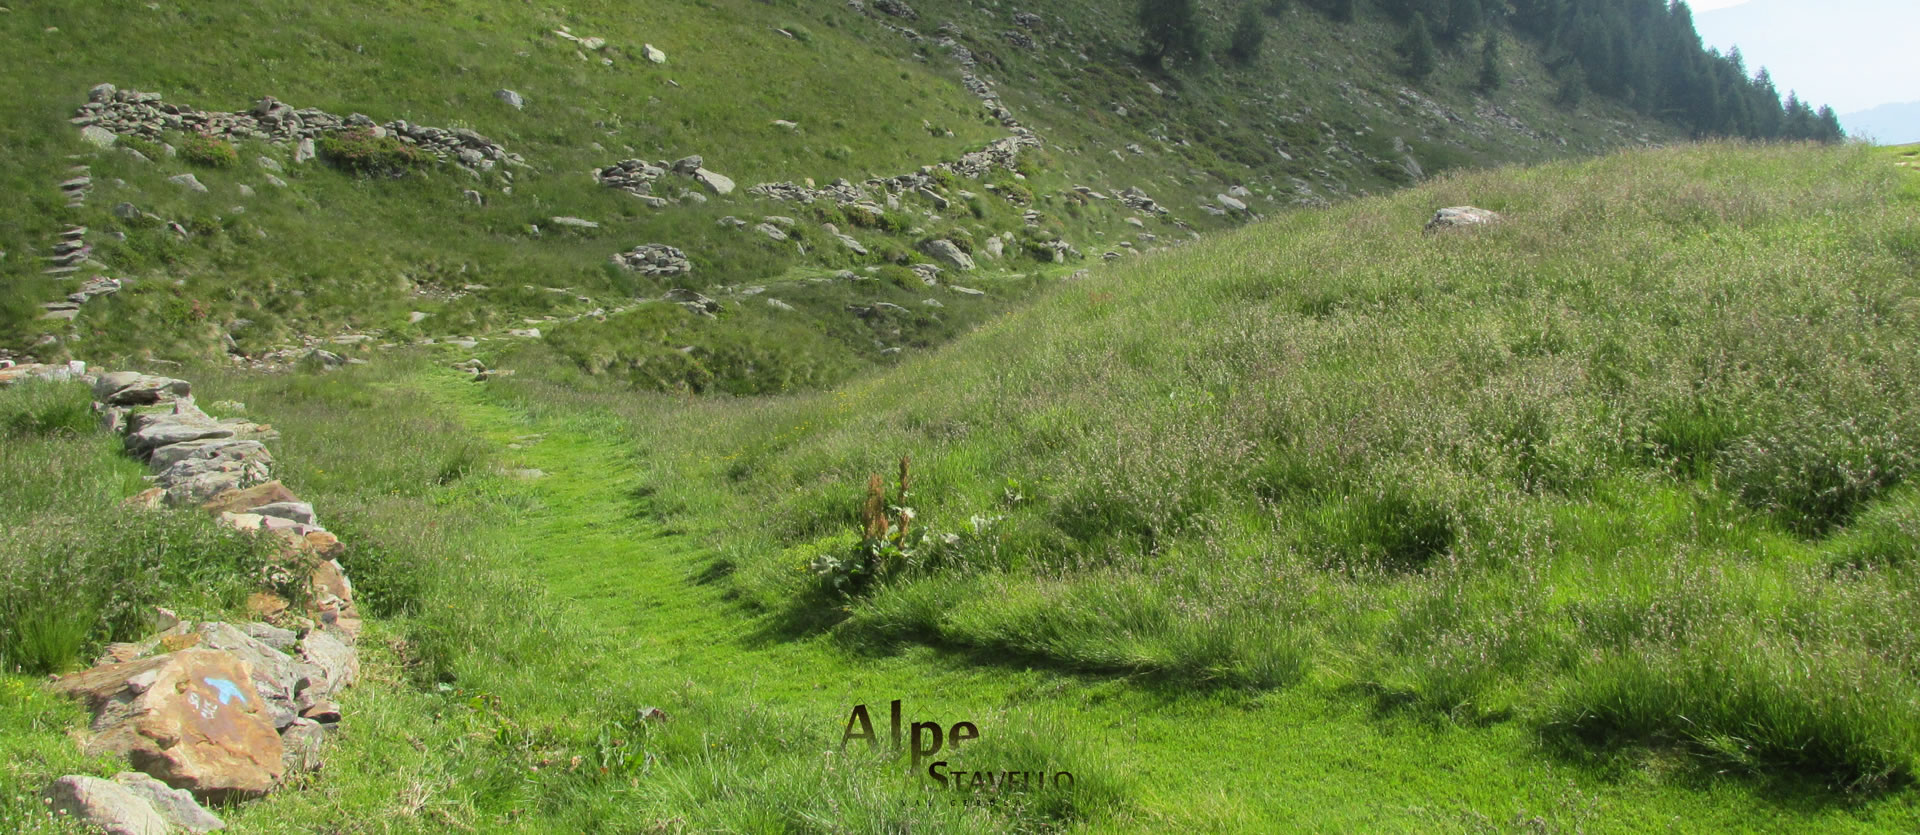 Lavori agricoli in Alpe - Alpe Stavello